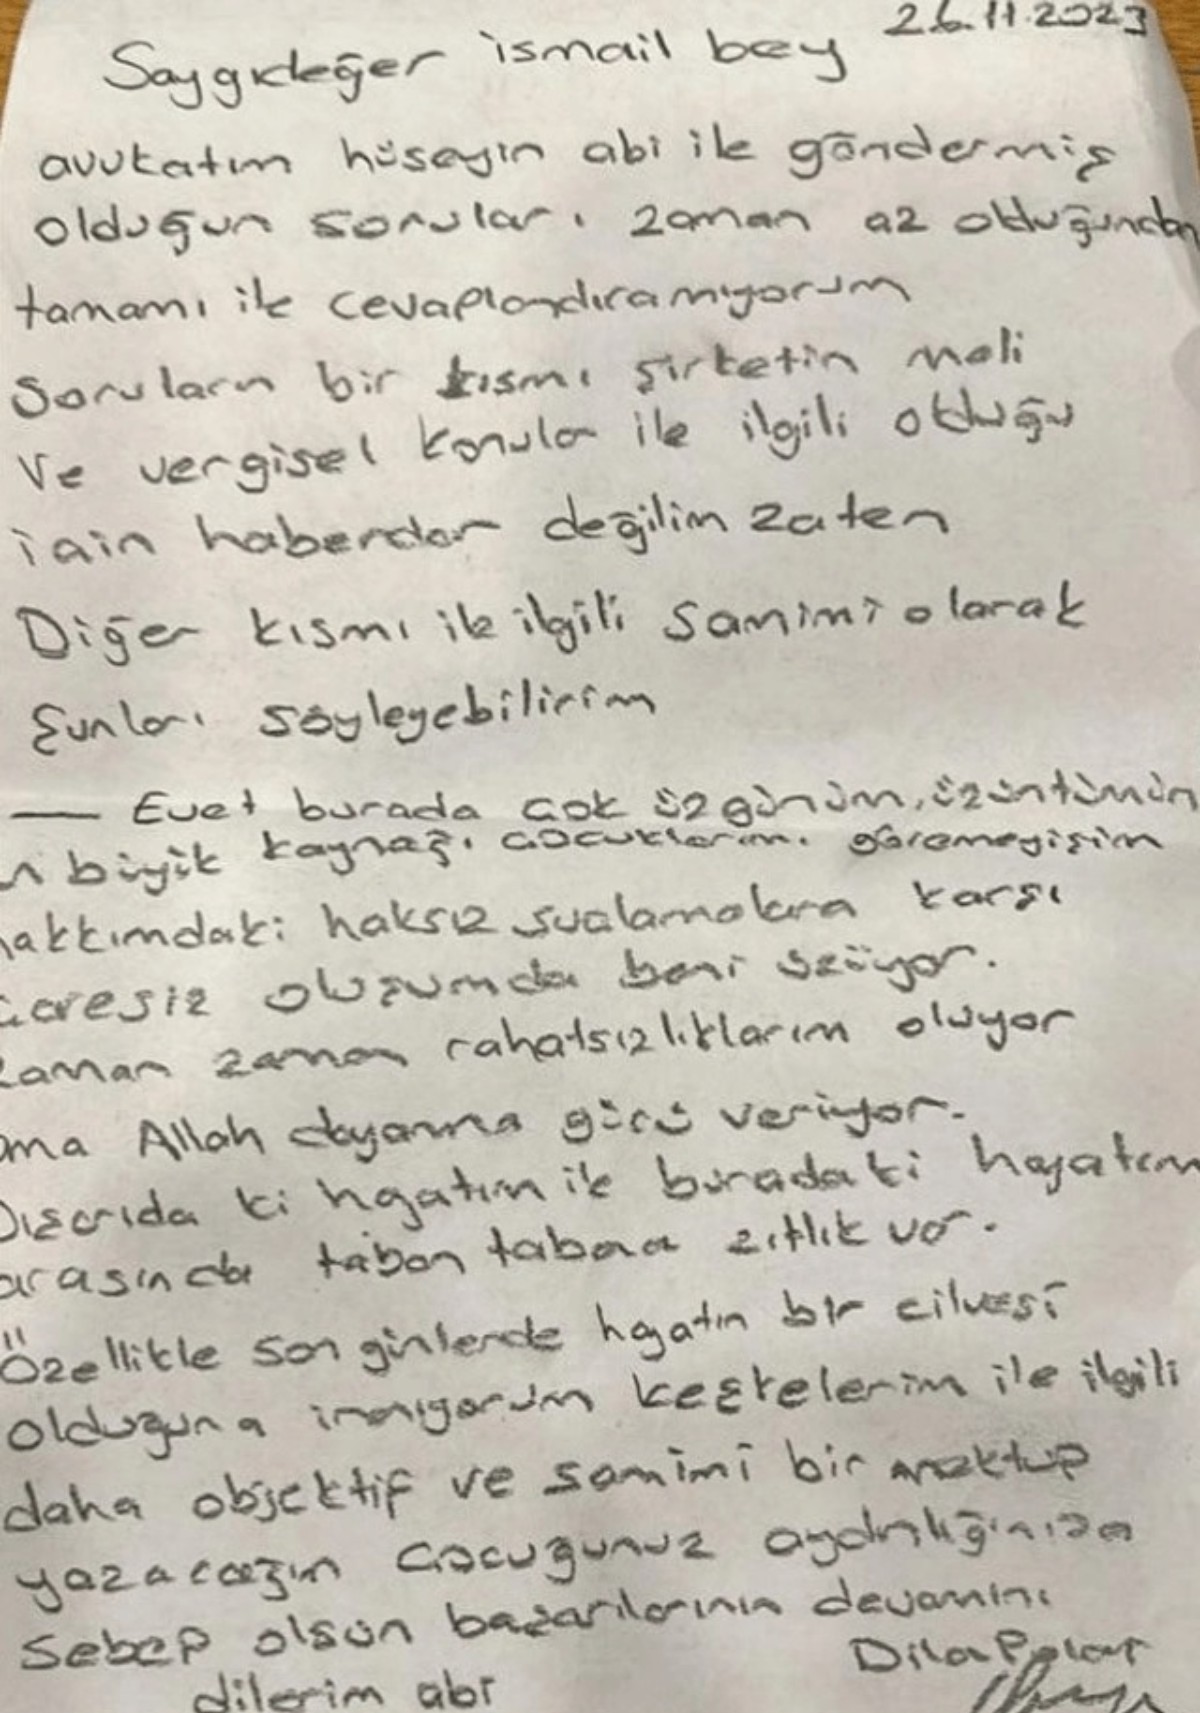 Dilan Polat cezaevinden yazdığı mektup